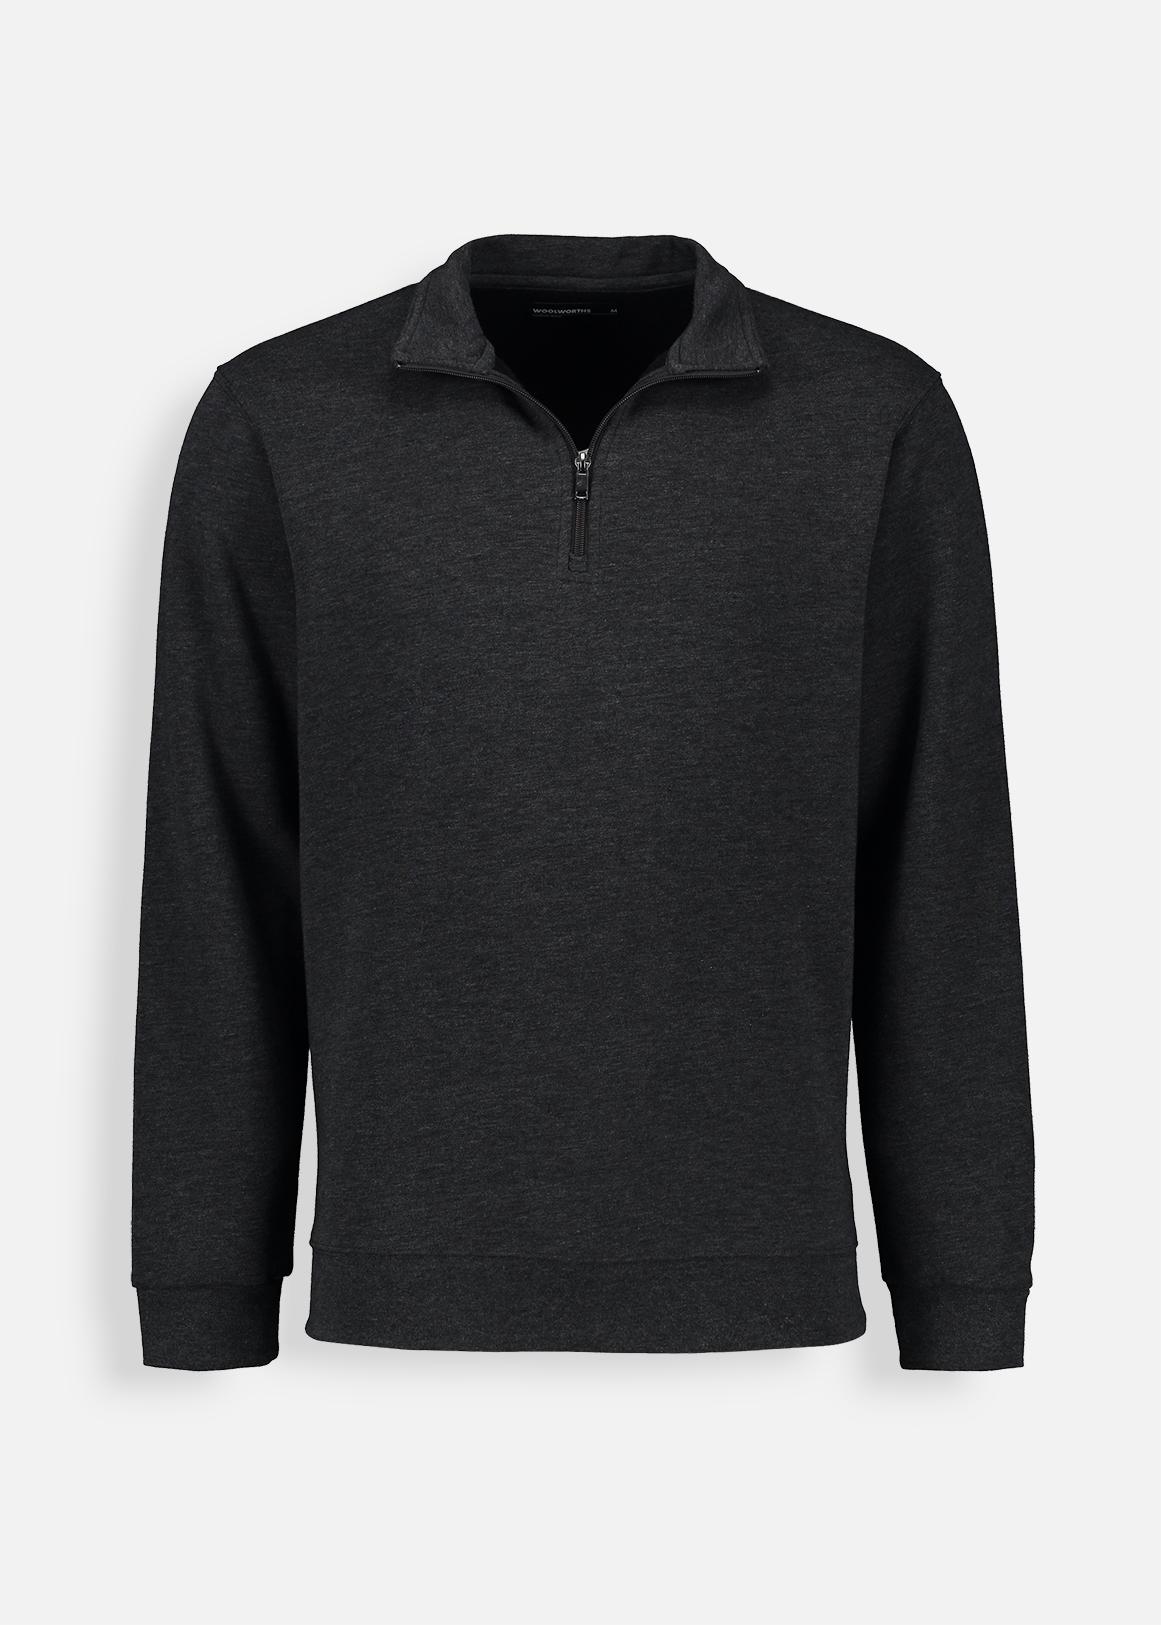 Selected Homme cotton quarter zip sweatshirt in black - BLACK